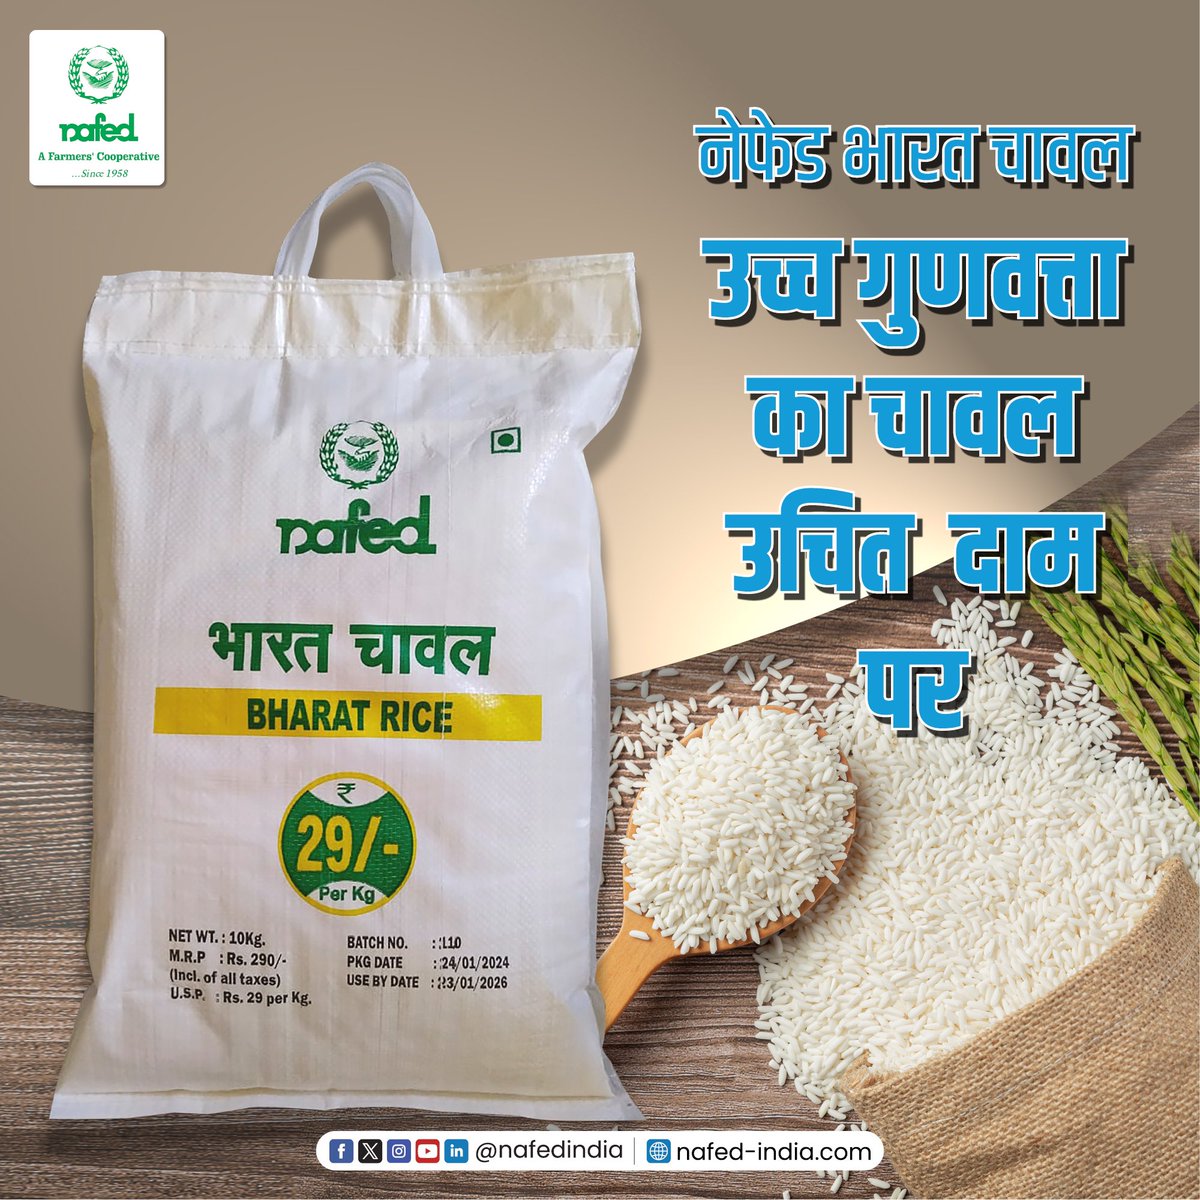 भारत चावल का हर दाना है शुद्धता से भरपूर। फिर चाहे इसका नियमित इस्तेमाल हो या पकाना हो कुछ ख़ास, भारत चावल बढ़ाये आपके किचन की शान। आज ही खरीदें nafedbazaar.com/product/nafed-…

#NAFED #NAFEDIndia #BharatBrand #BharatRice #quality #India #farmers #agriculture